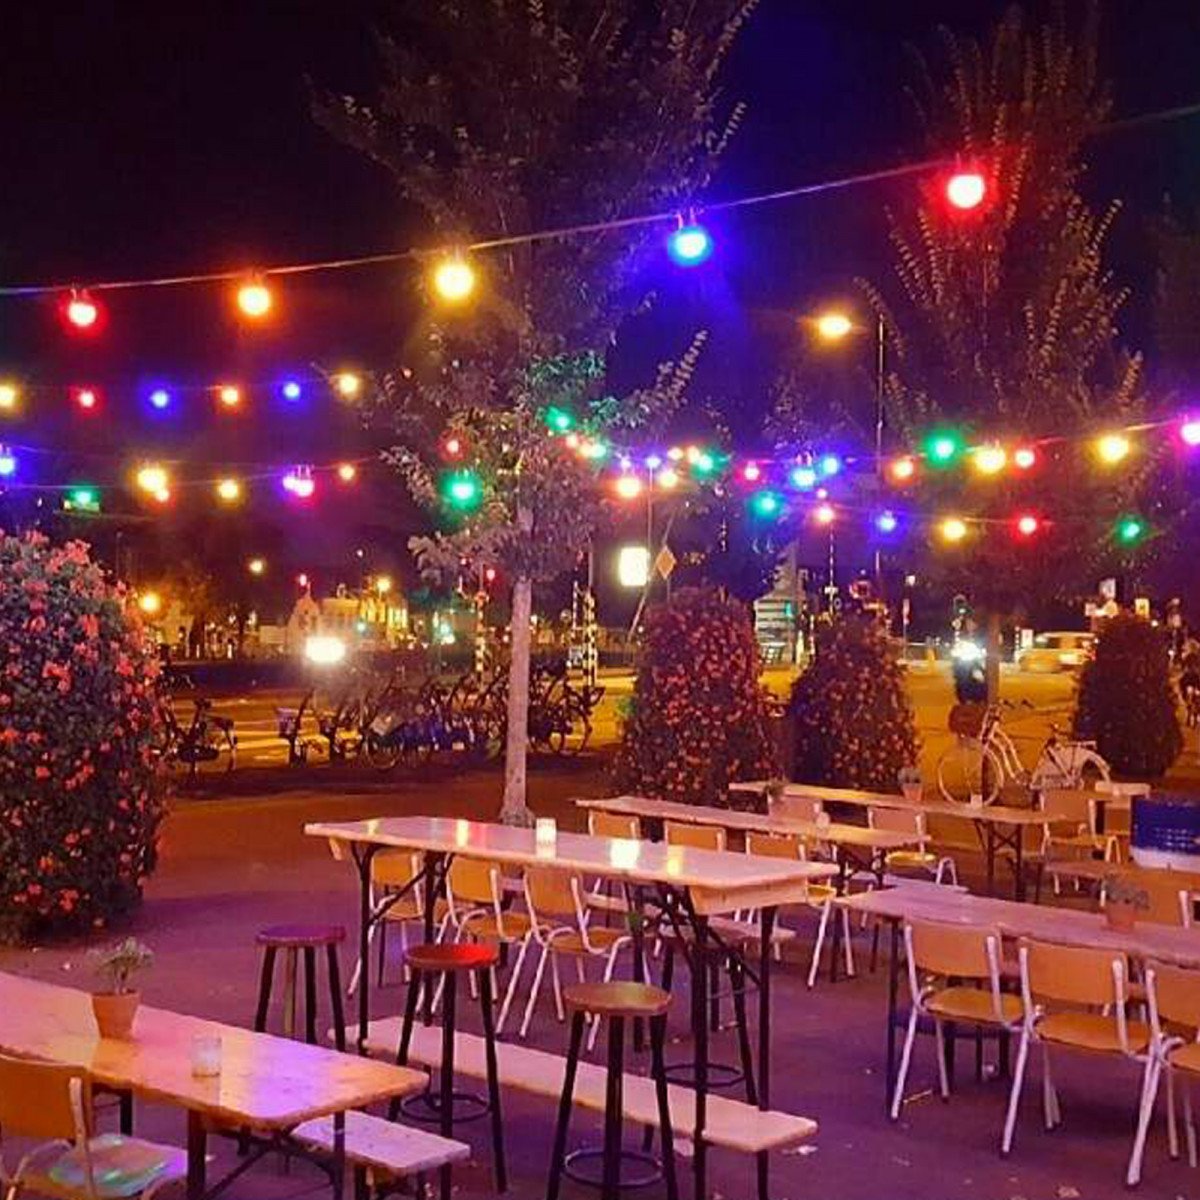 Guirlande lumineuse couleurs Patio 30 m (3x6868) LED inclus 36 ampoules-boules de couleurs | Nostalux.fr